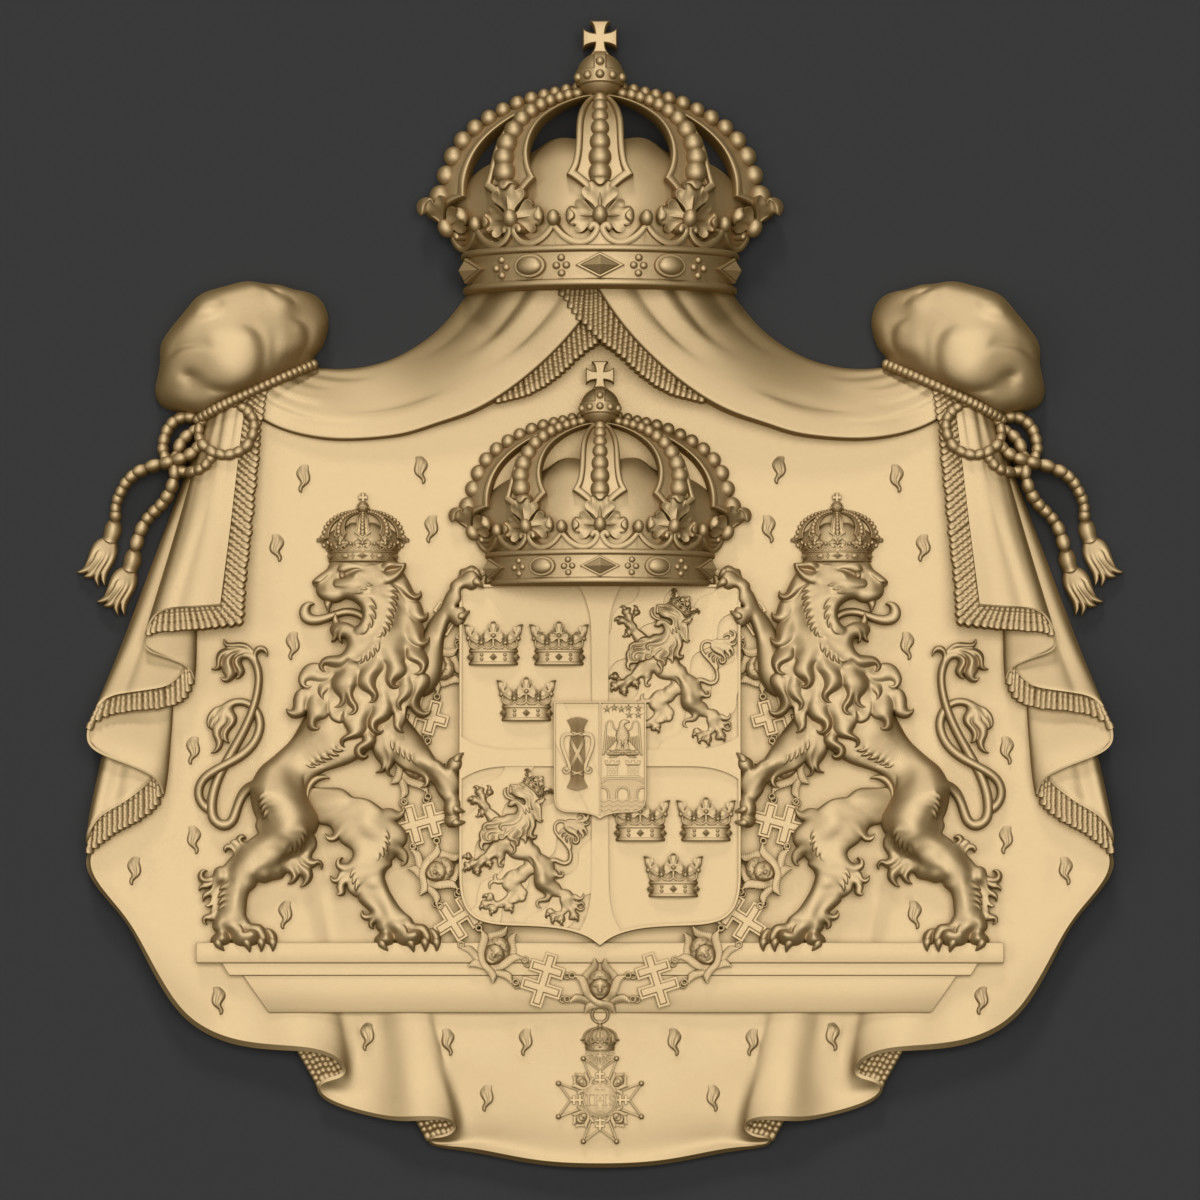 coat-of-arms-of-sweden-3d-model-obj-fbx-stl-blend-3mf.jpg